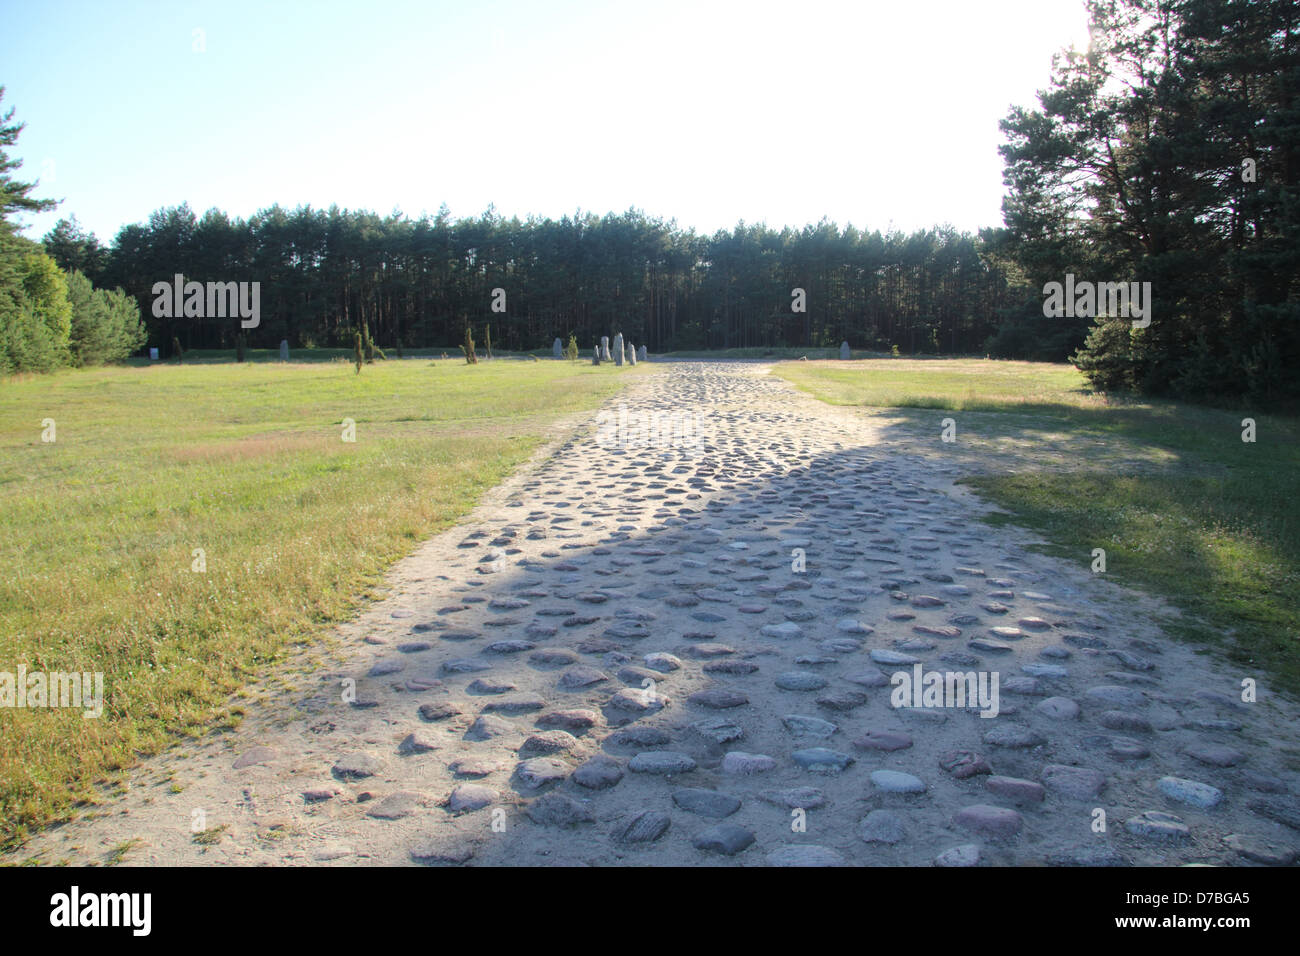 Die Art und Weise, die Treblinkas Opfer waren gezwungen, auf ihren Weg in die Gaskammern in das Vernichtungslager in Polen laufen Stockfoto